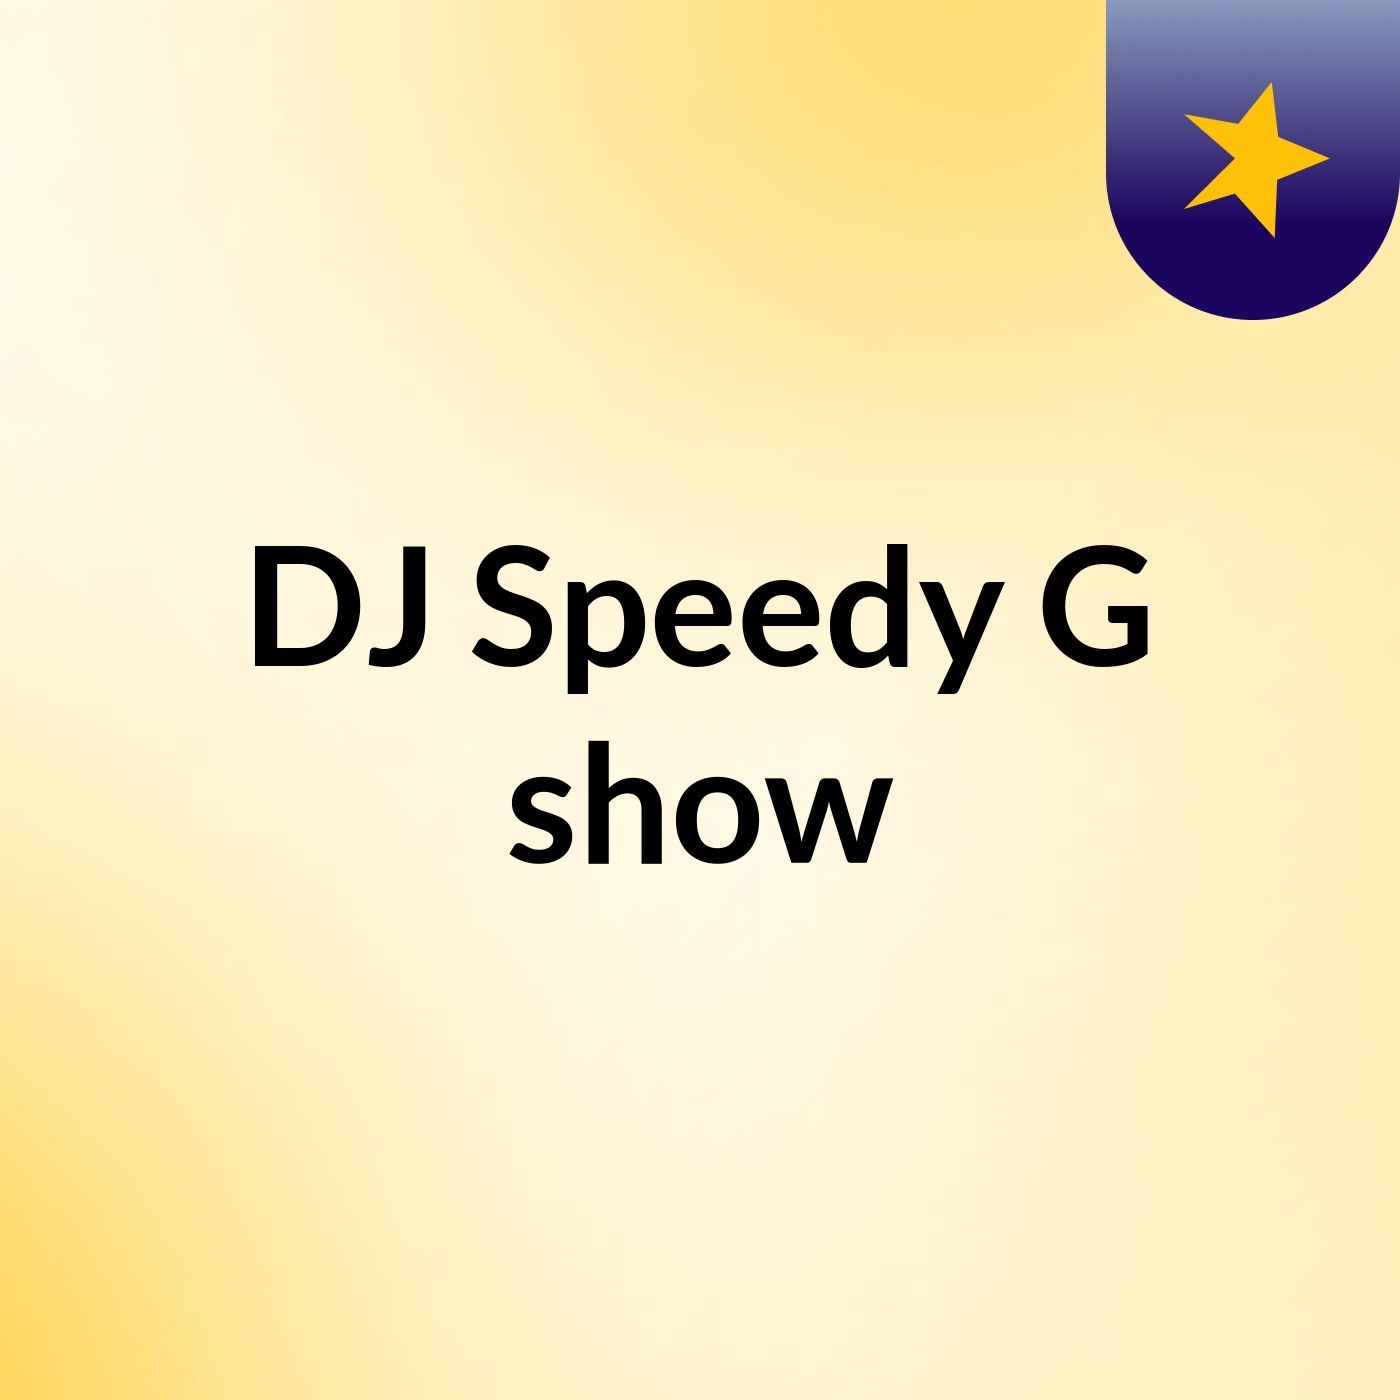 DJ Speedy G show